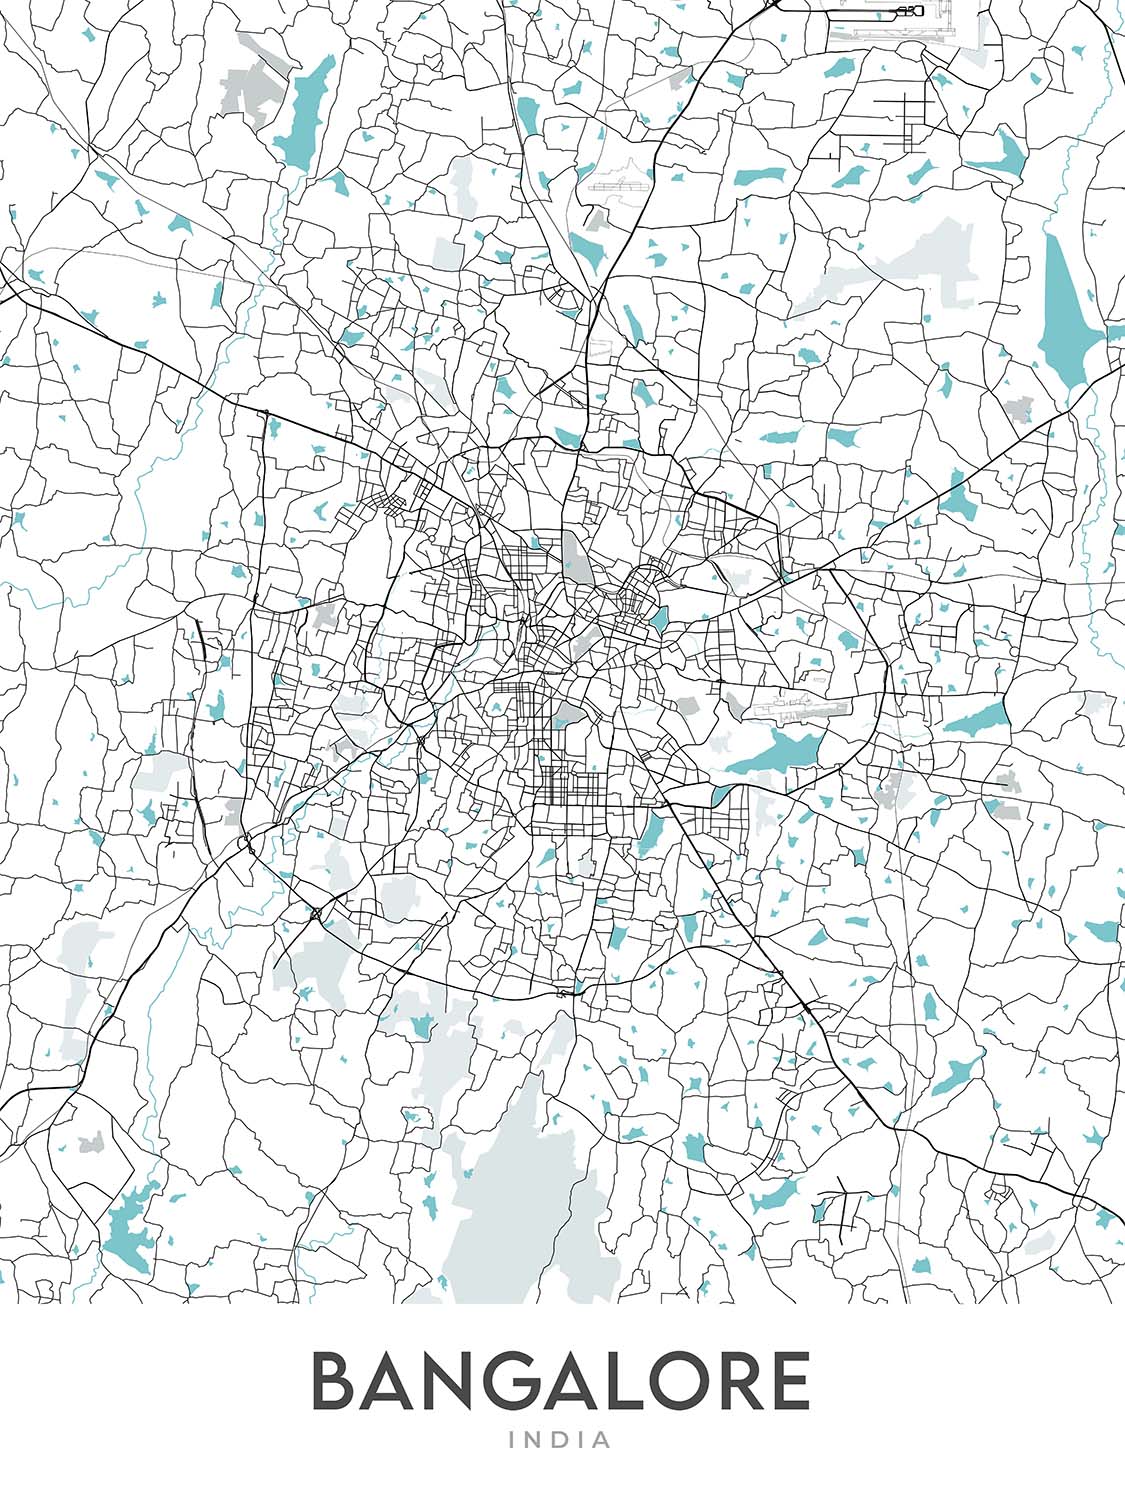 Plan de la ville moderne de Bangalore, Inde : MG Road, Lalbagh, Cubbon Park, Whitefield, Indiranagar